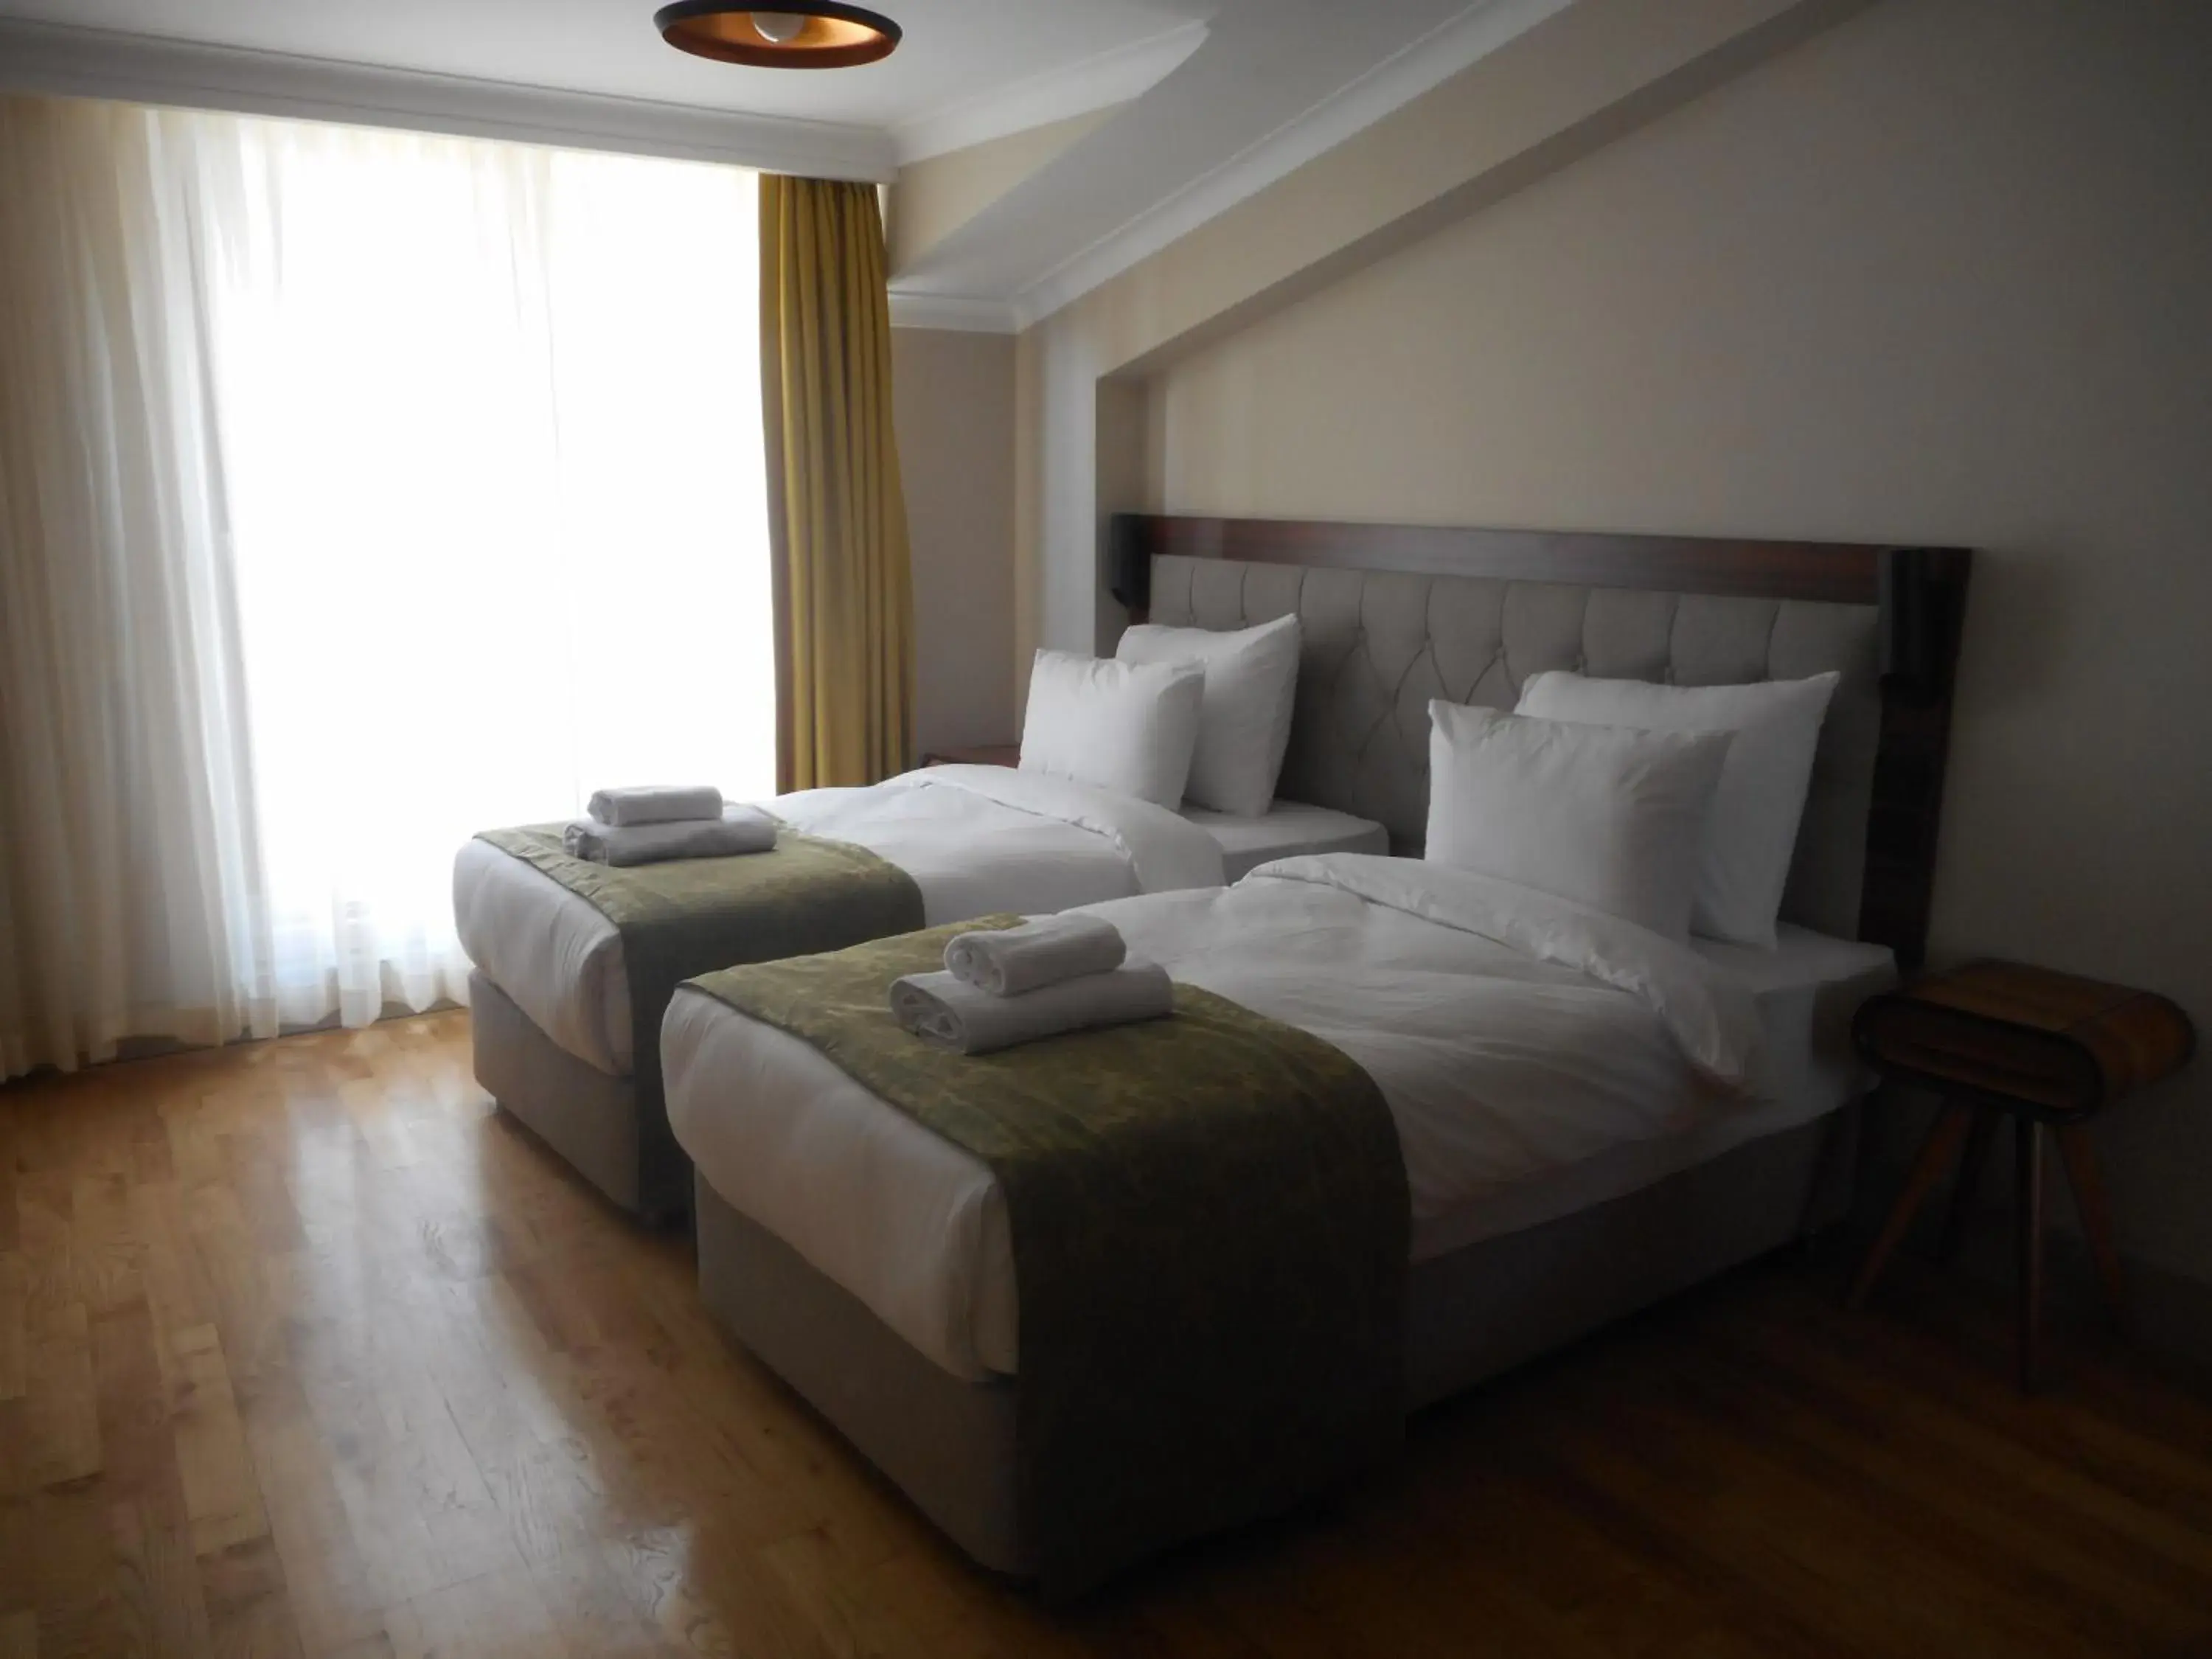 Bed, Room Photo in Keten Suites Taksim